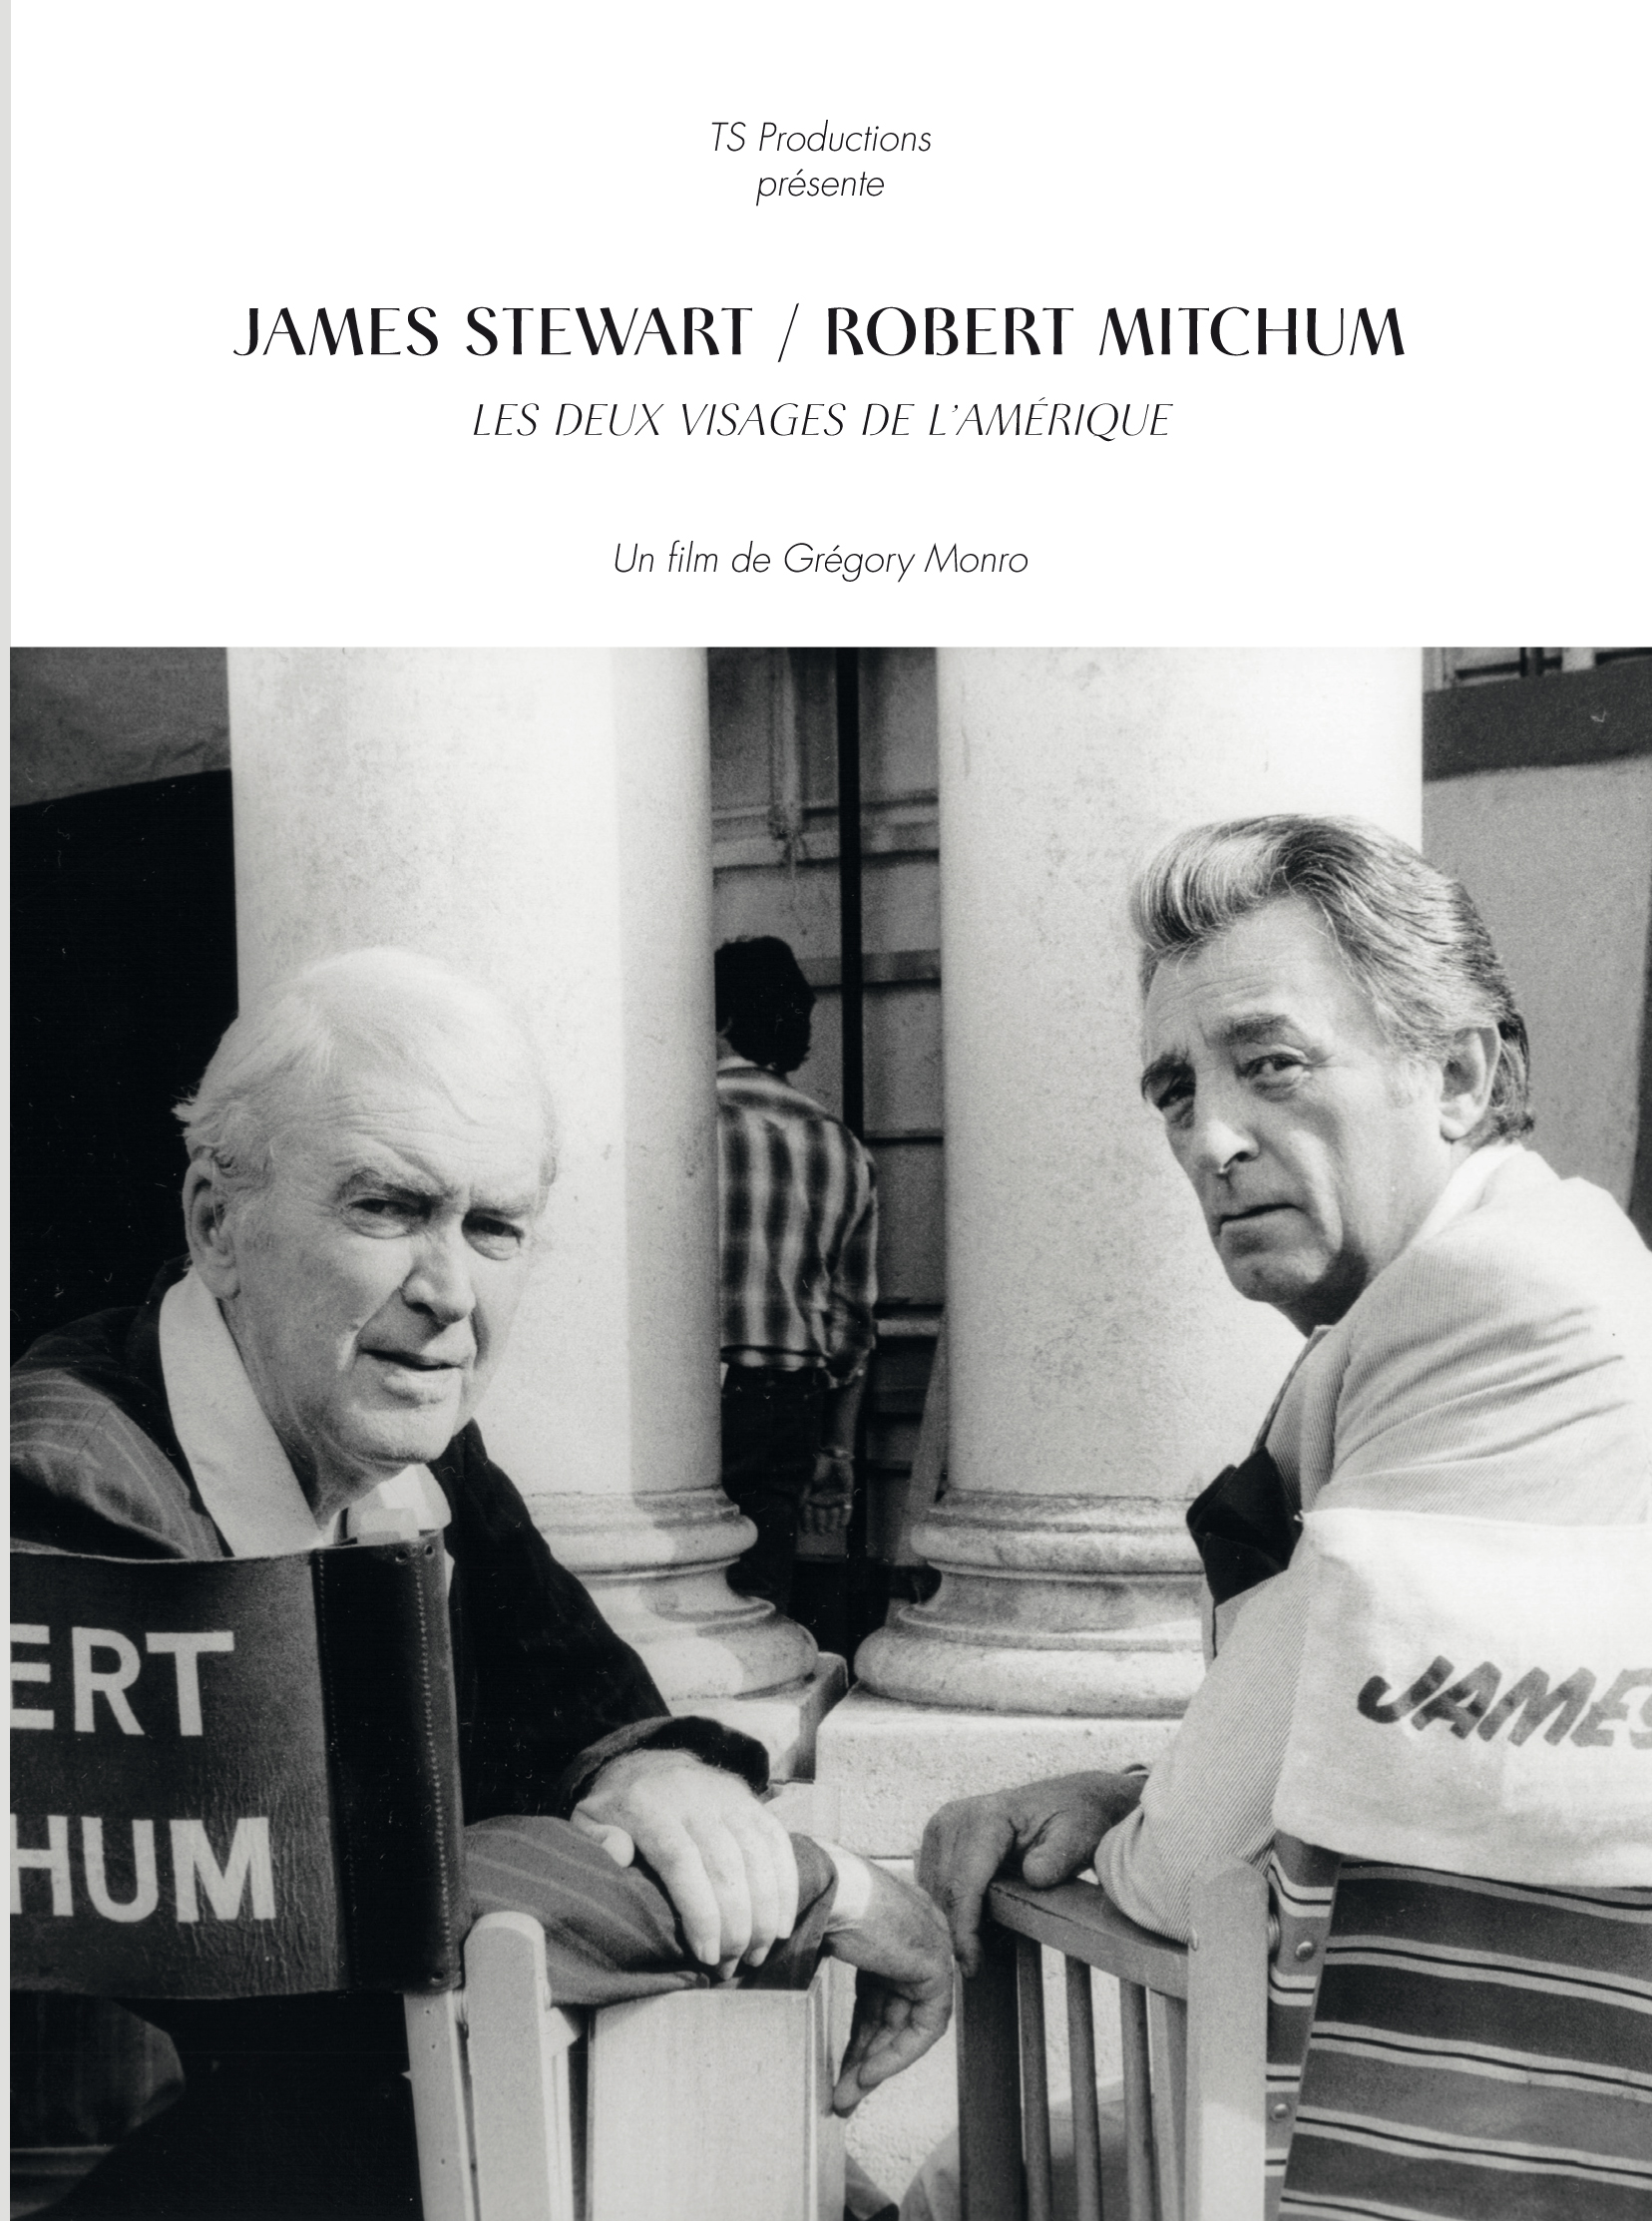 James Stewart / Robert Mitchum, les deux visages de l'Amérique - Grégory Monro